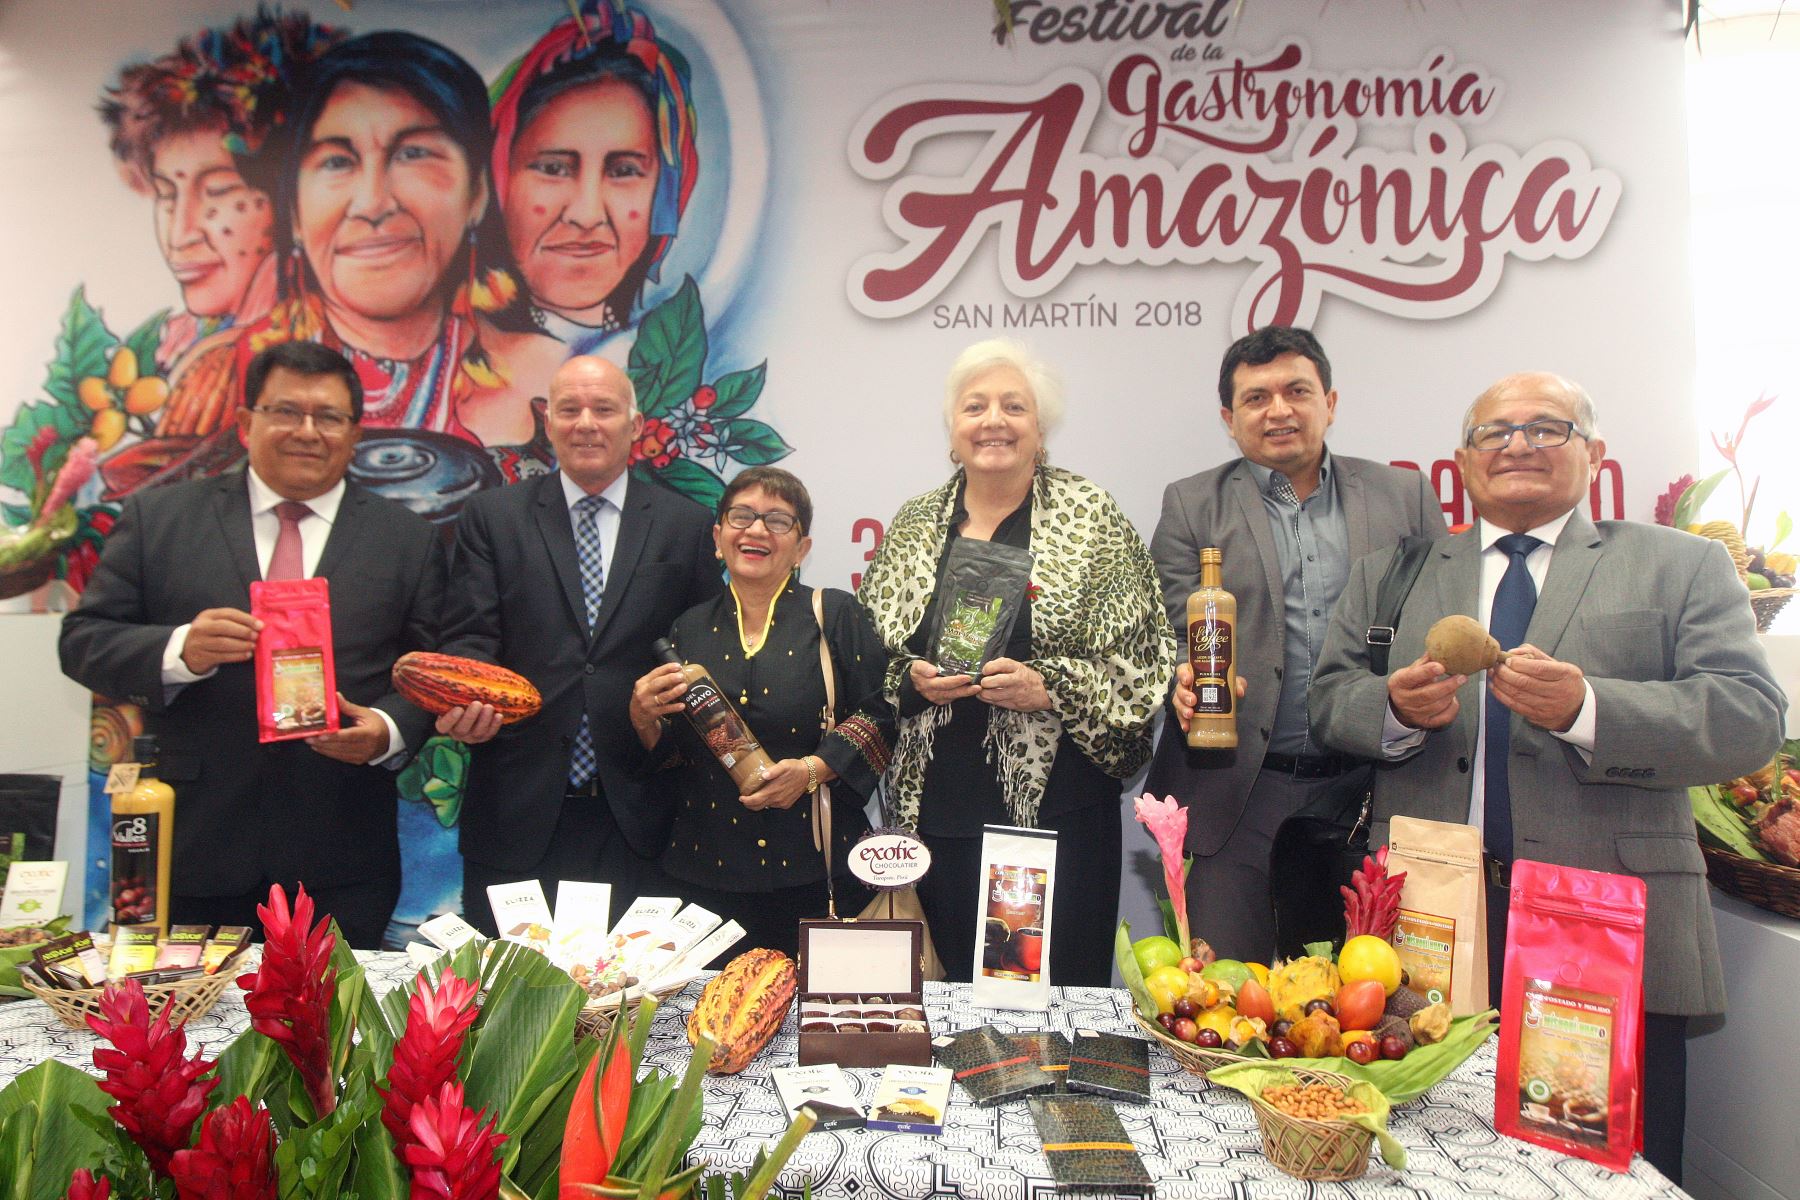 Primer Festival de la Gastronomía Amazónica “Sabores y Saberes” se realizará del 31 de mayo al 3 de junio en la ciudad de Tarapoto, ANDINA/Héctor Vinces